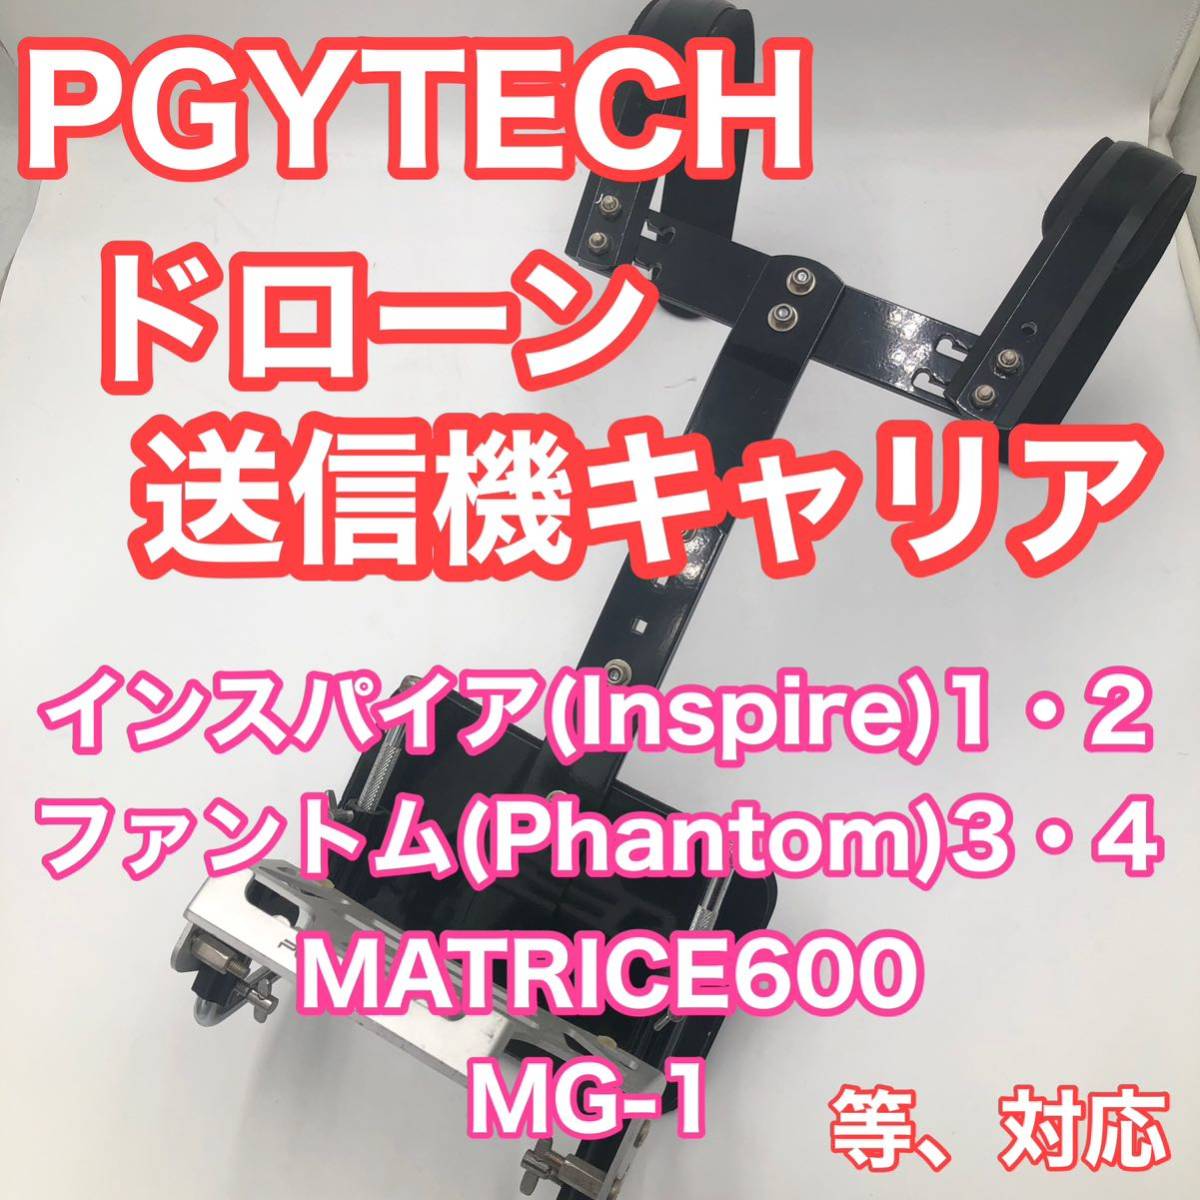 送料無料 PGYTECH ドローン 送信機キャリア インスパイア（Inspire）12、ファントム（Phantom）34、MATRICE600、MG-1、等対応